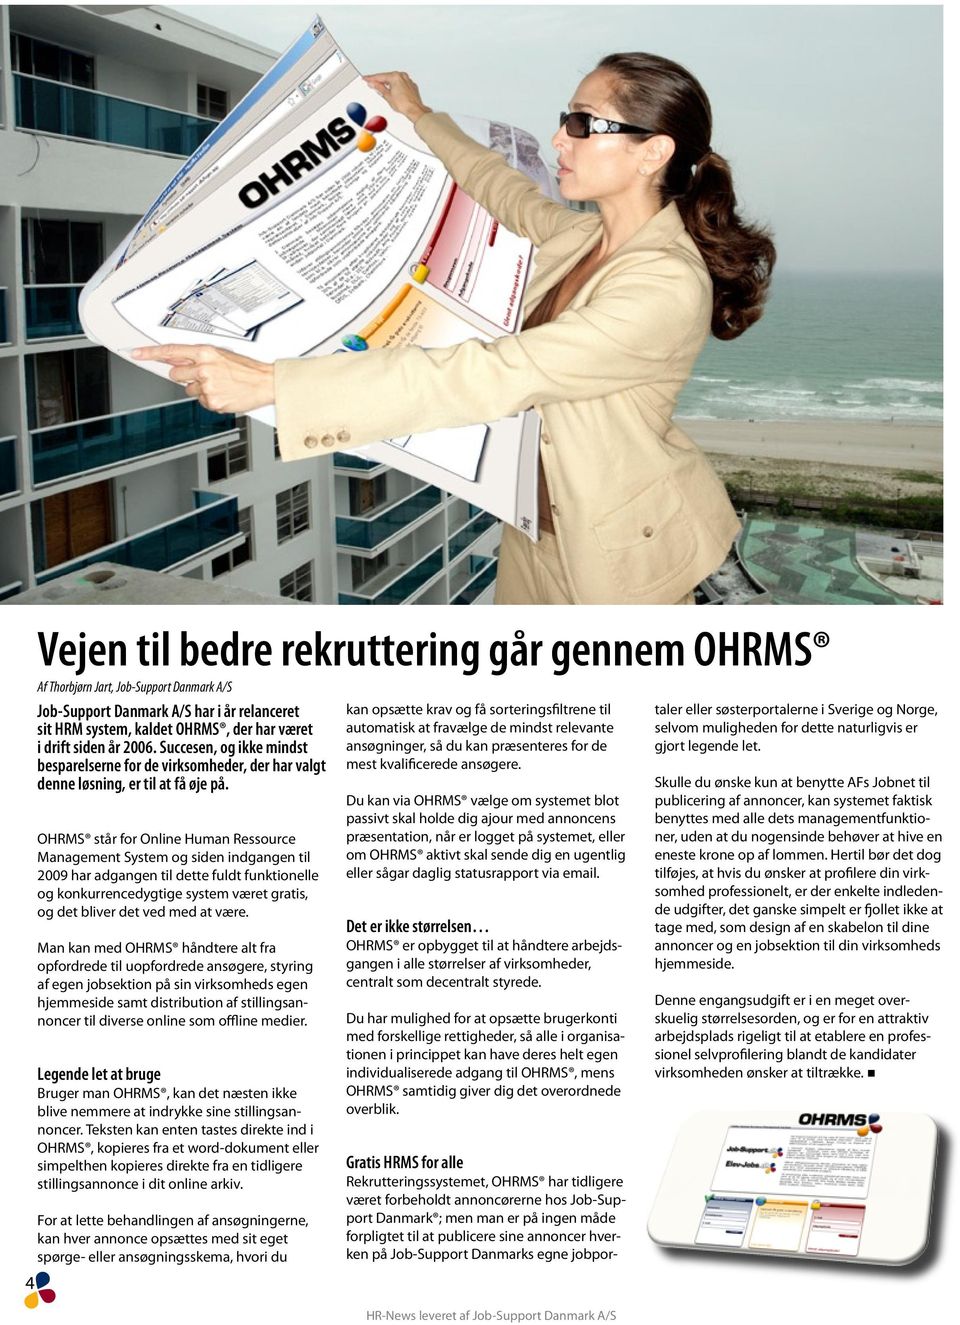 OHRMS står for Online Human Ressource Management System og siden indgangen til 2009 har adgangen til dette fuldt funktionelle og konkurrencedygtige system været gratis, og det bliver det ved med at